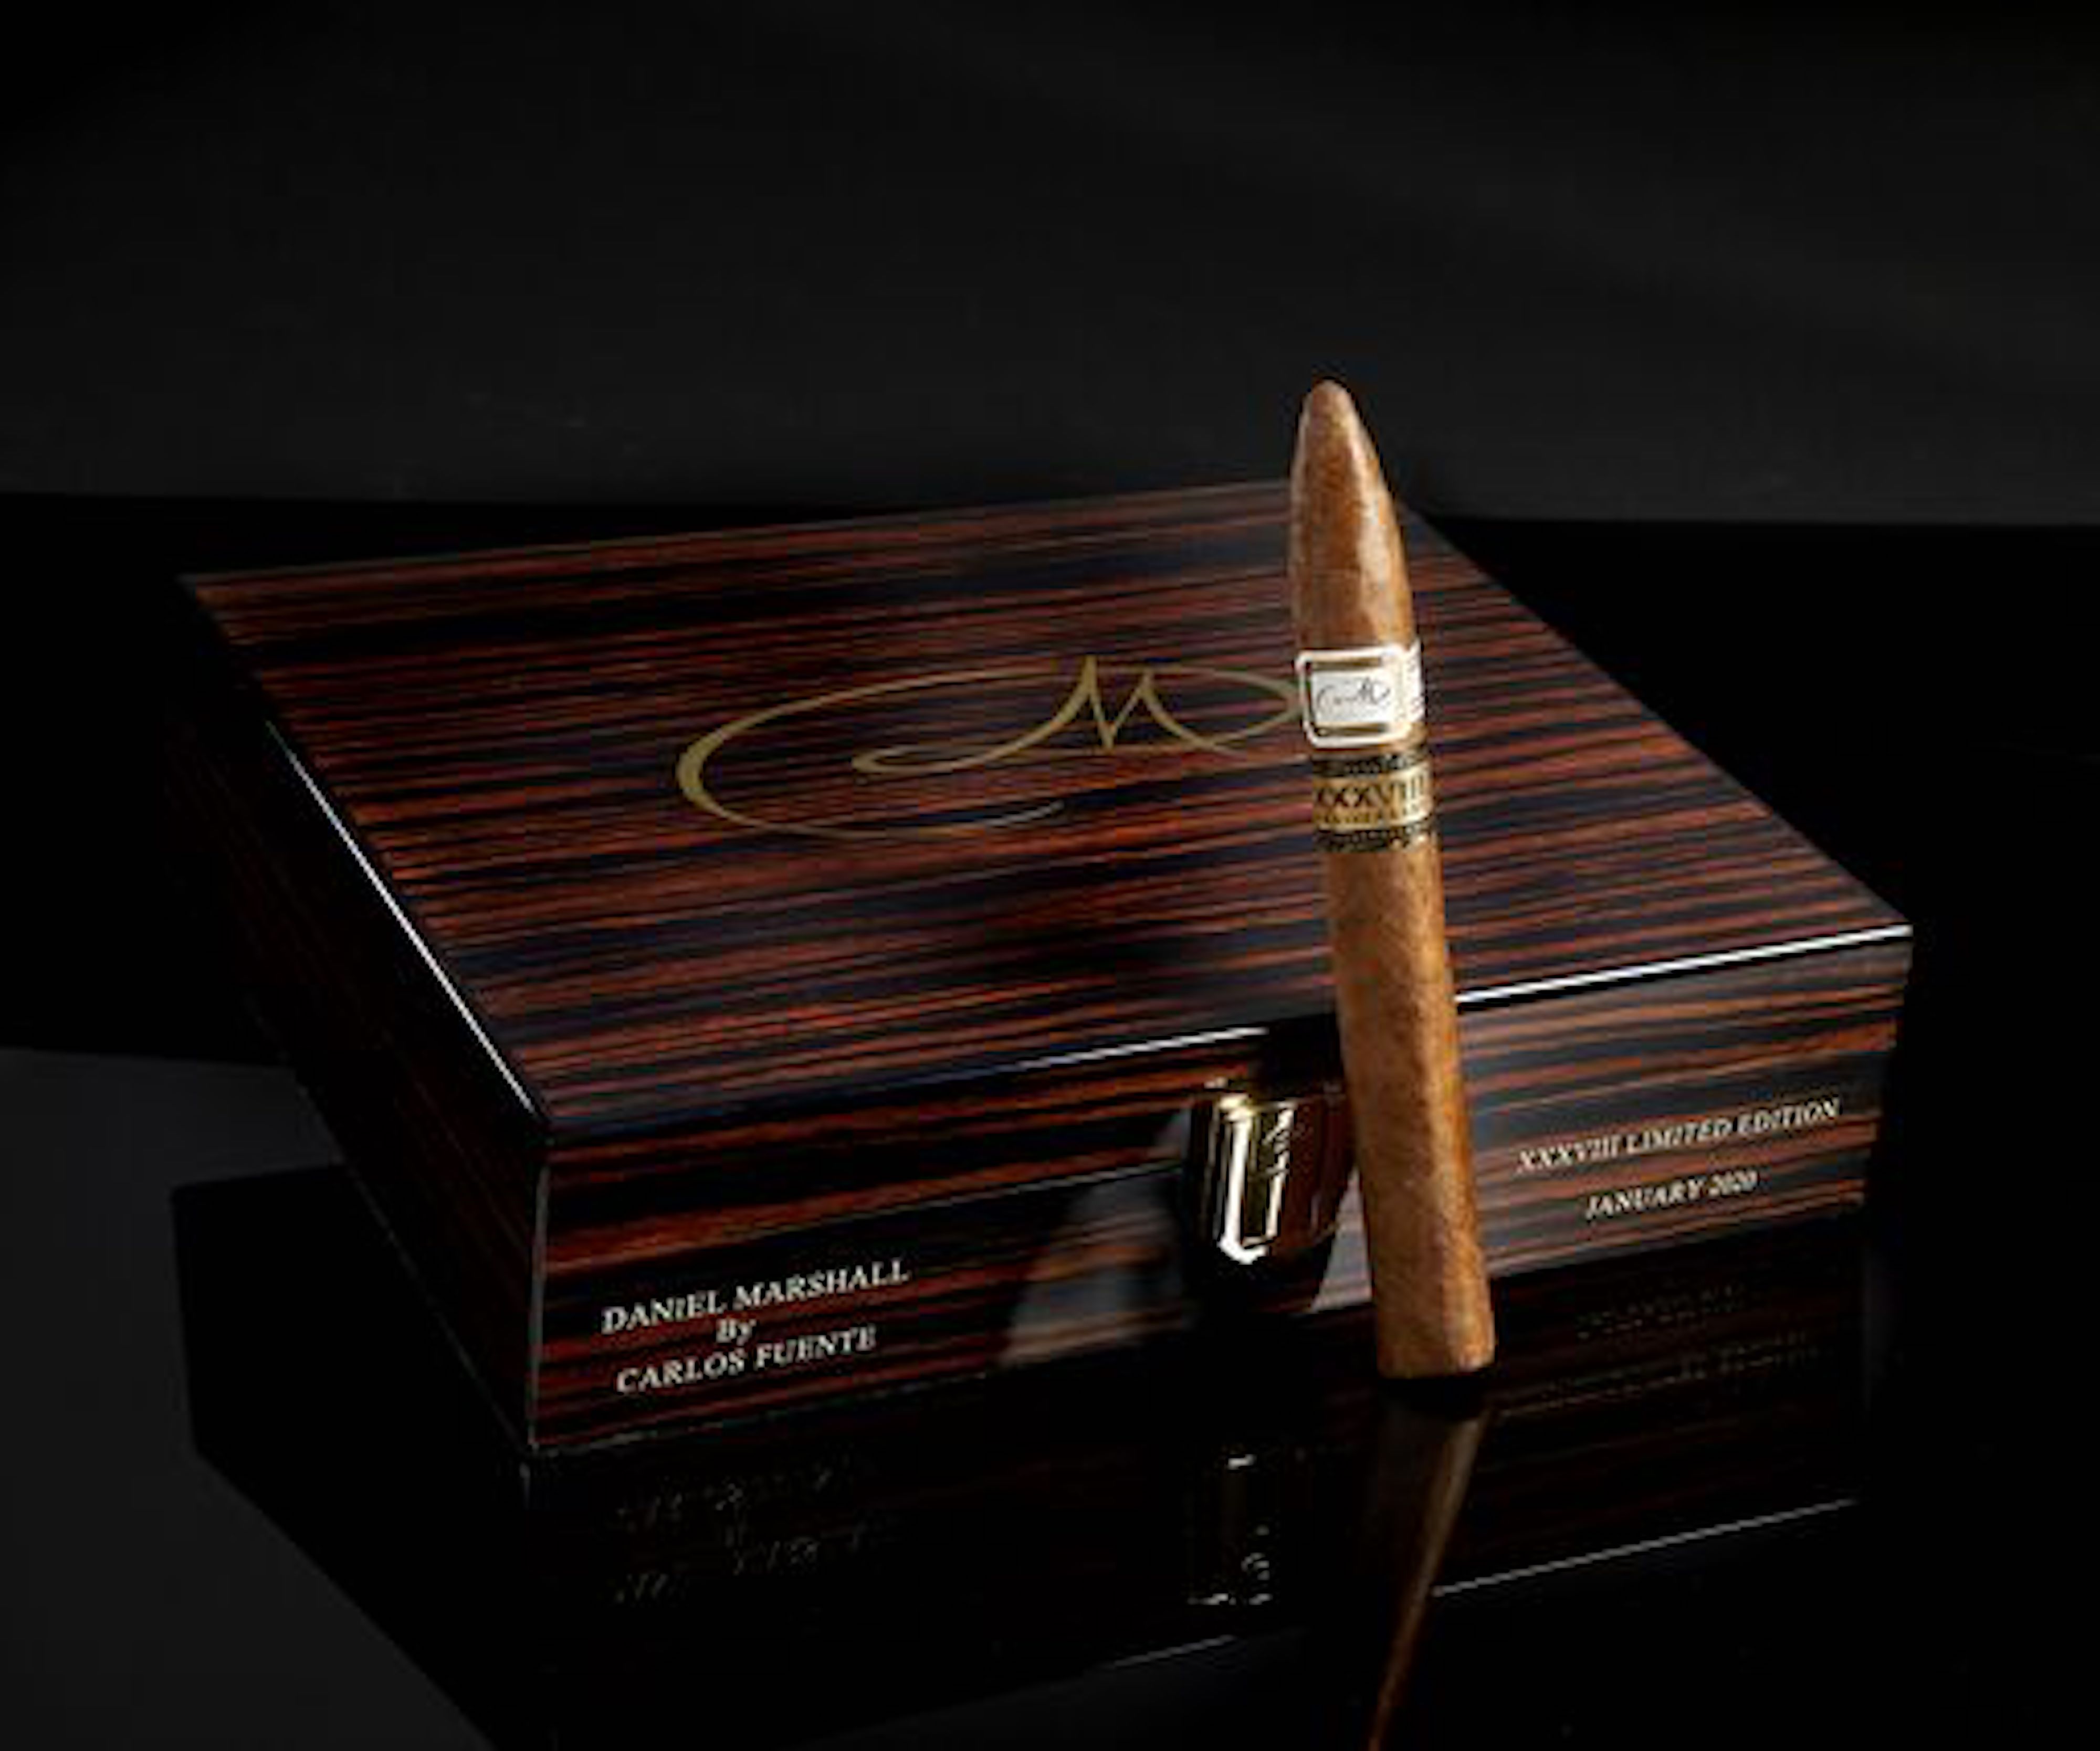 Daniel Marshall 38th XXXVIII Anniversary Cigar by Carlos Fuente in Macasar Ebony Presentation Desk Travel Humidor